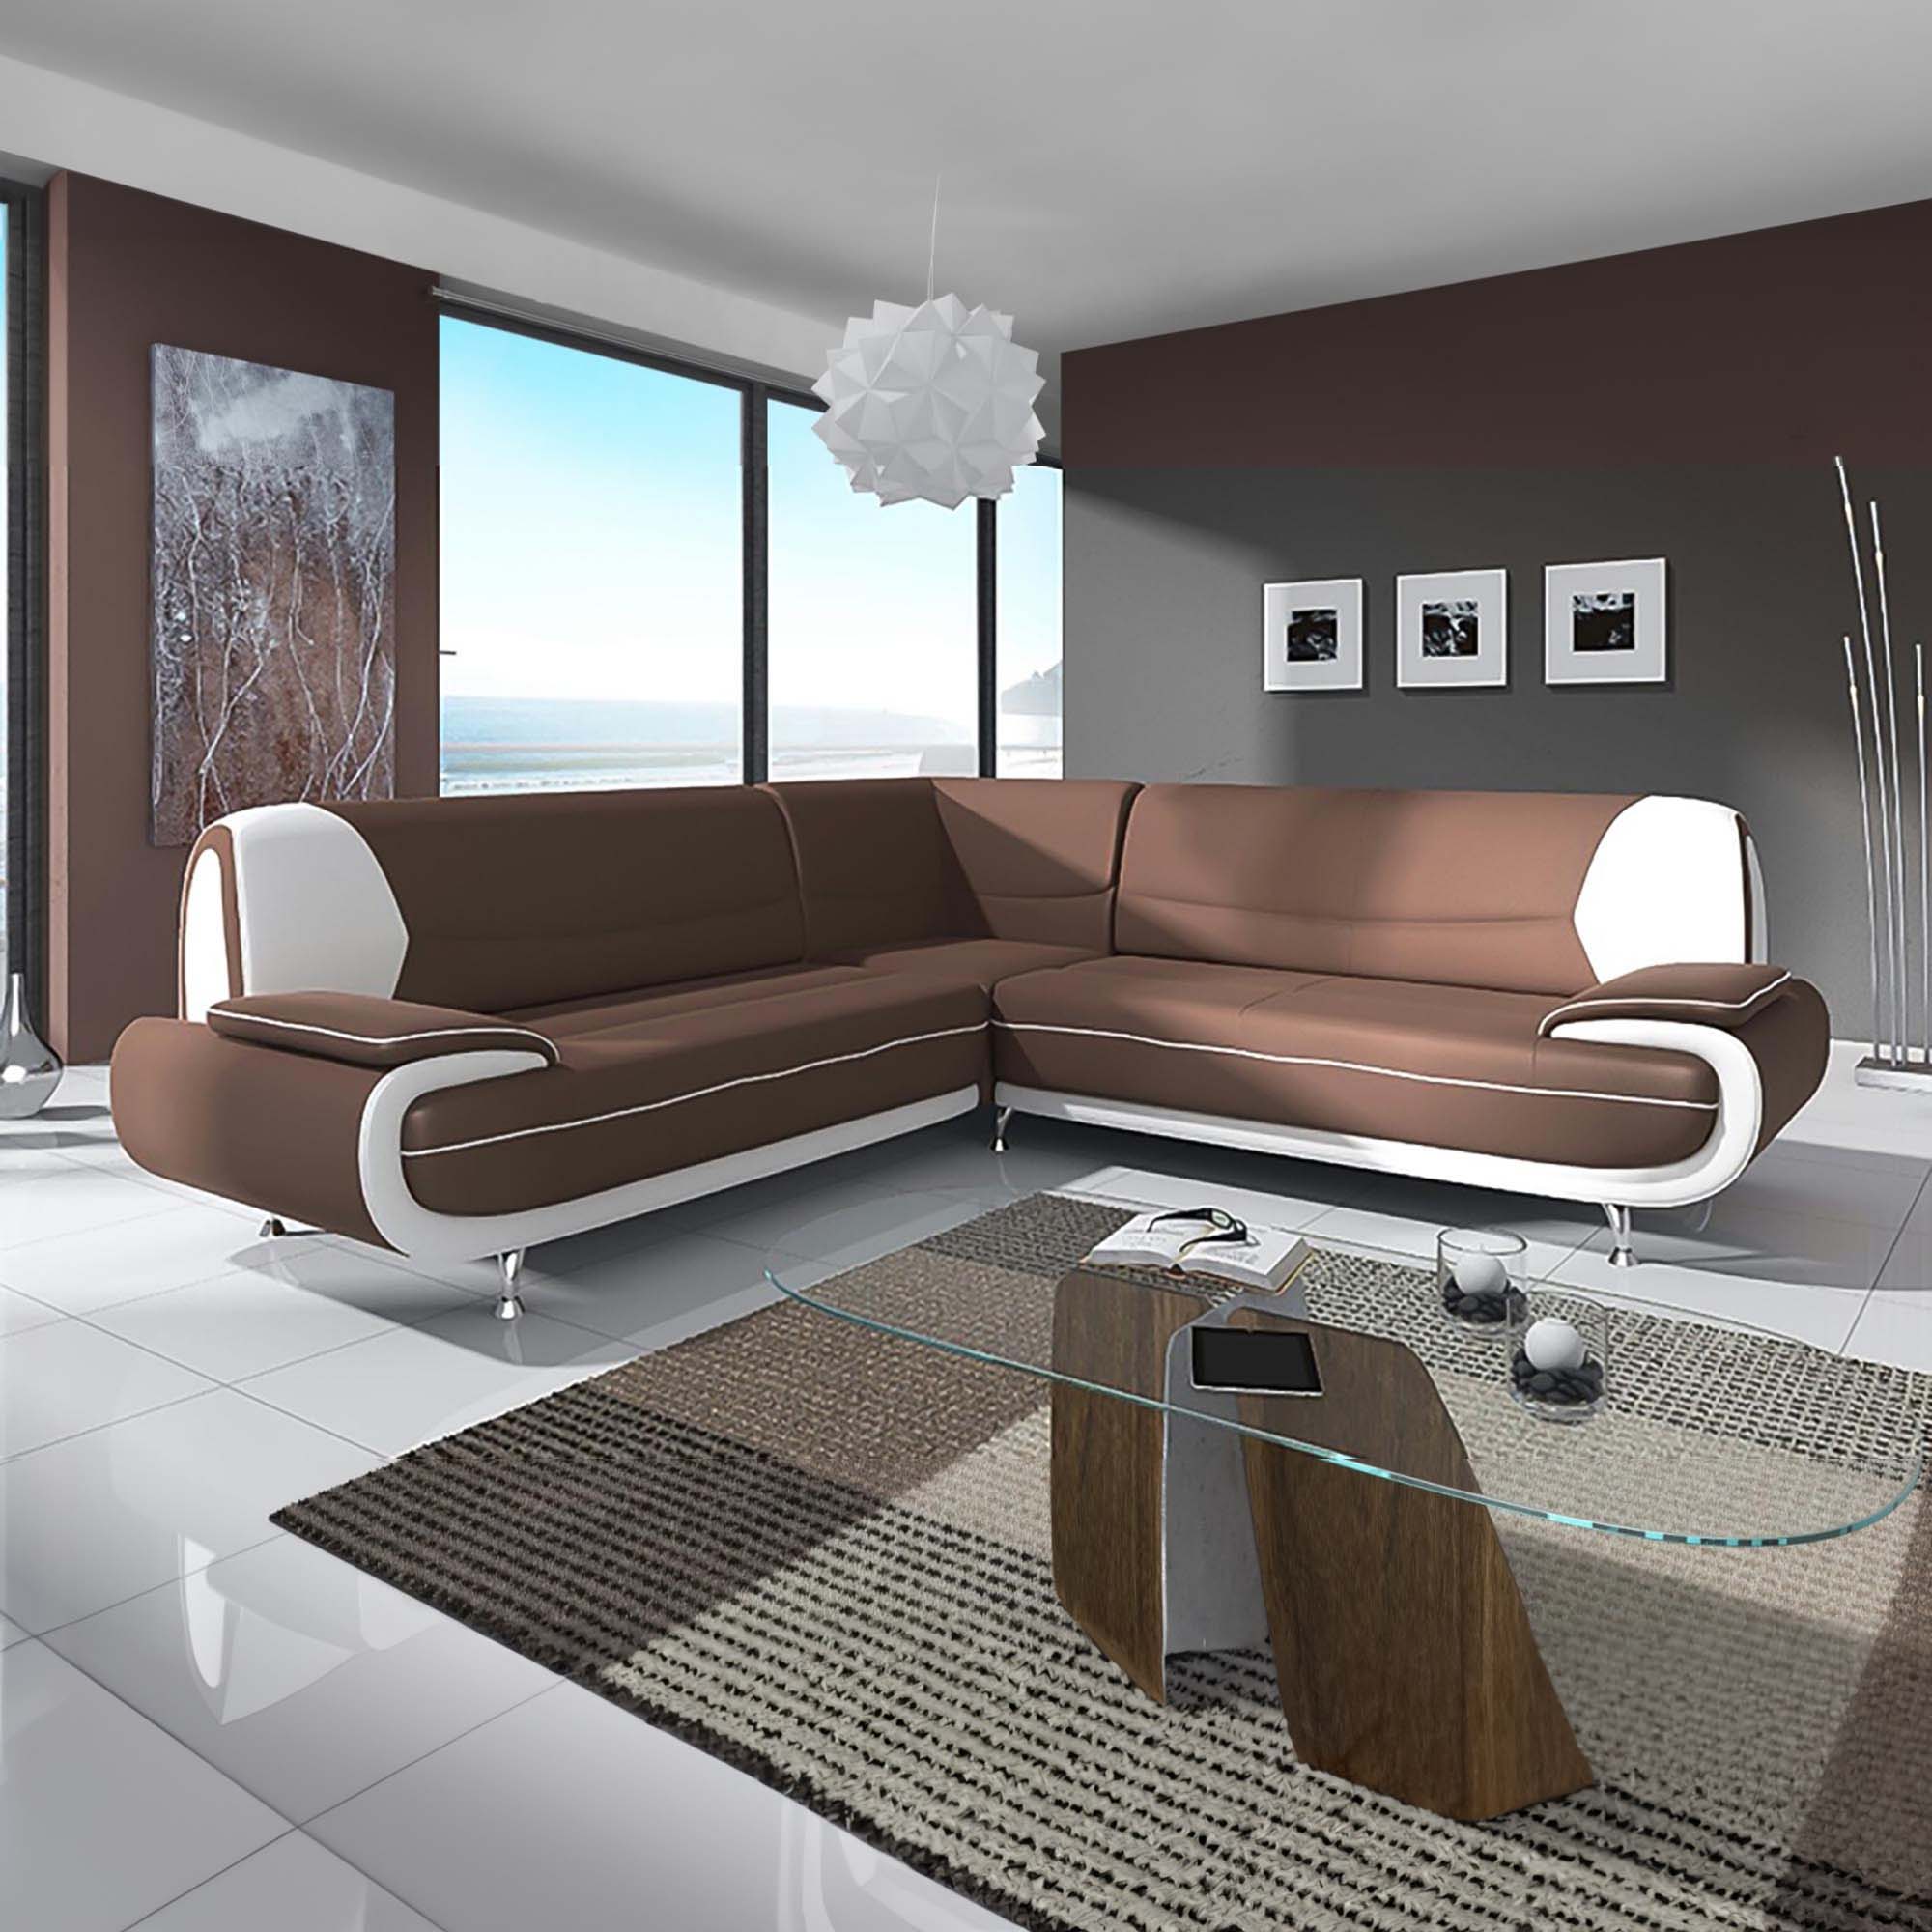 Canapé d'angle design en simili cuir marron et blanc